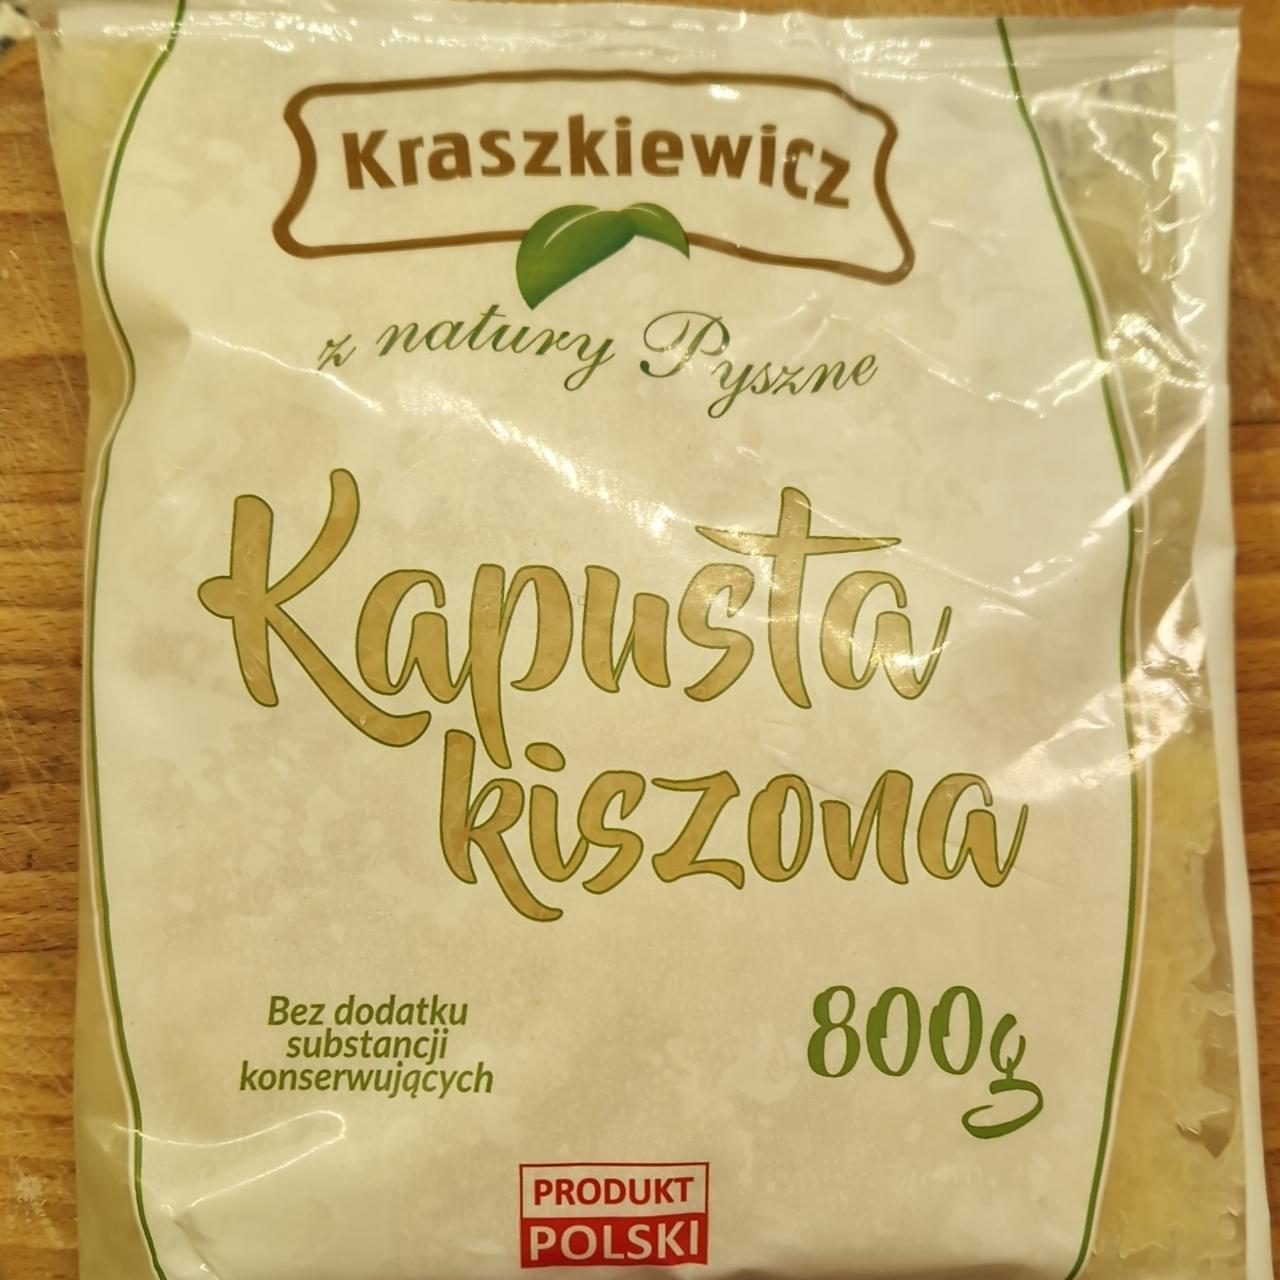 Zdjęcia - Kapusta kiszona Kraszkiewicz